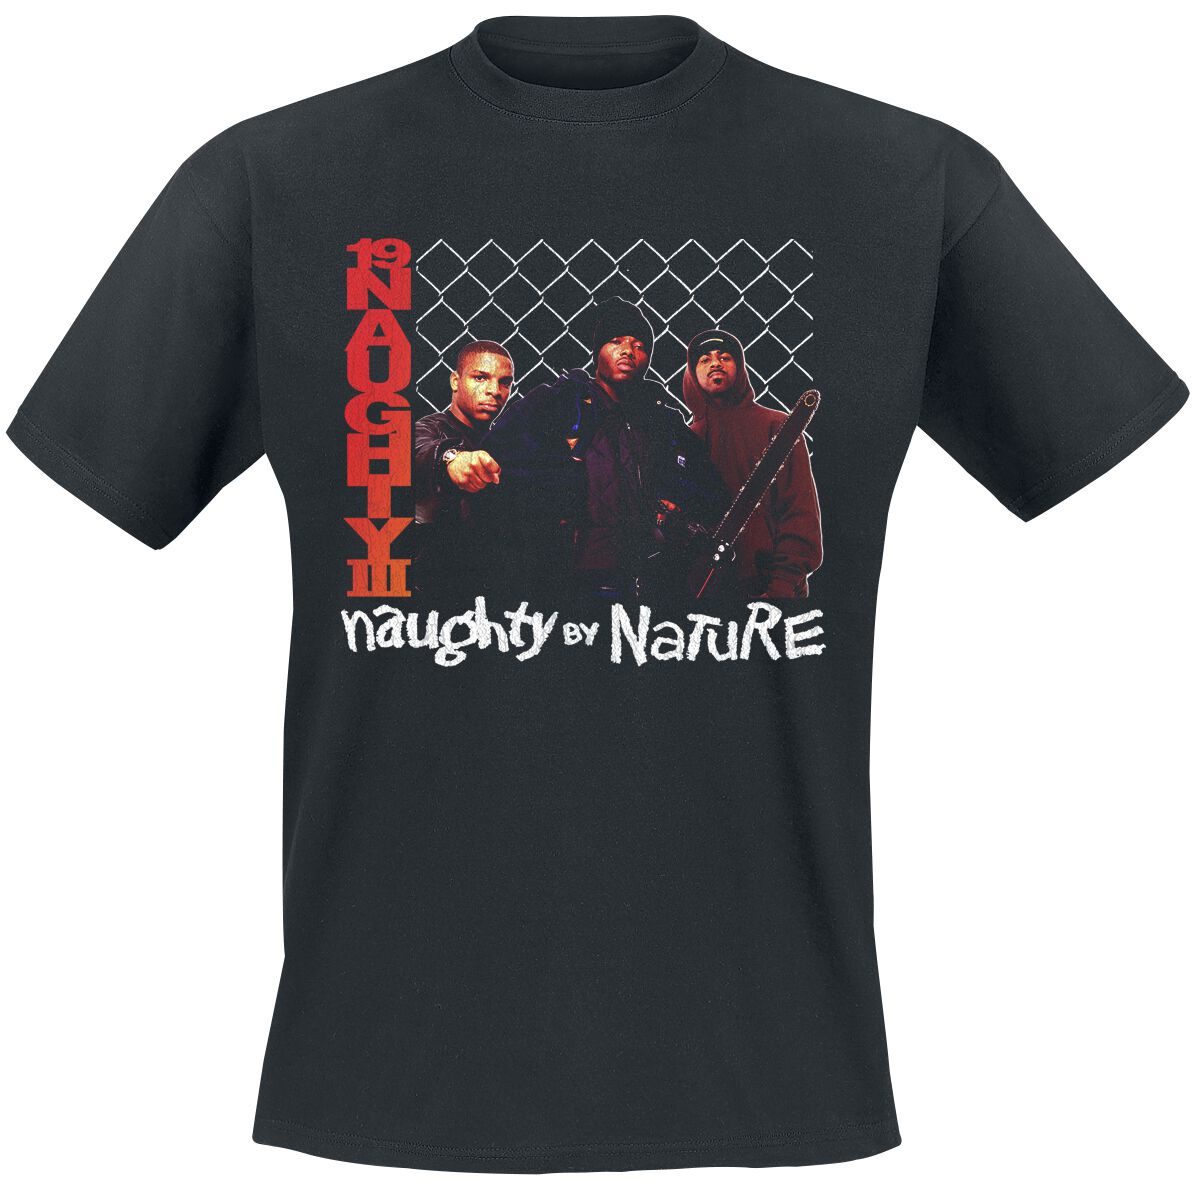 Naughty by Nature T-Shirt - 19 Naughty 111 - S bis 3XL - für Männer - Größe XL - schwarz  - Lizenziertes Merchandise!